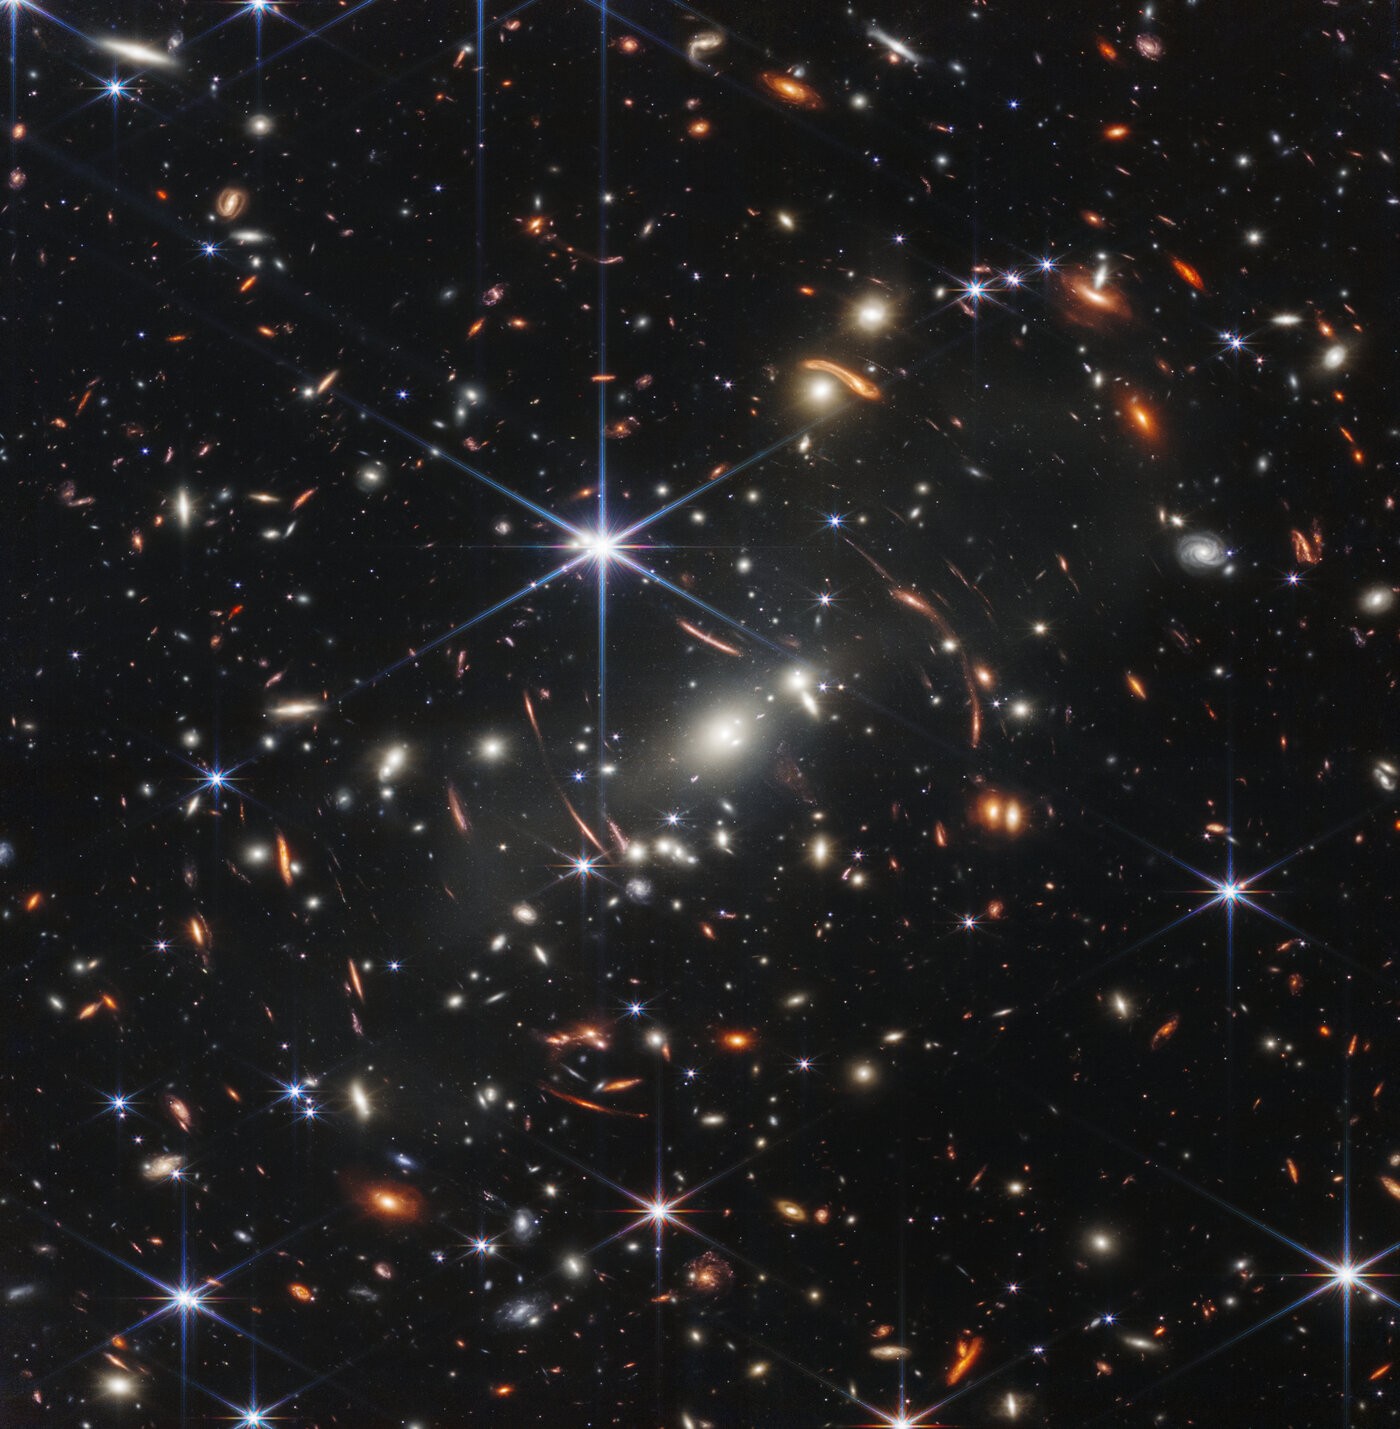 Zdjęcia wykonane przez Kosmiczny Teleskop Jamesa Webba są teraz dostępne w nowym wydaniu. Zobaczcie sami